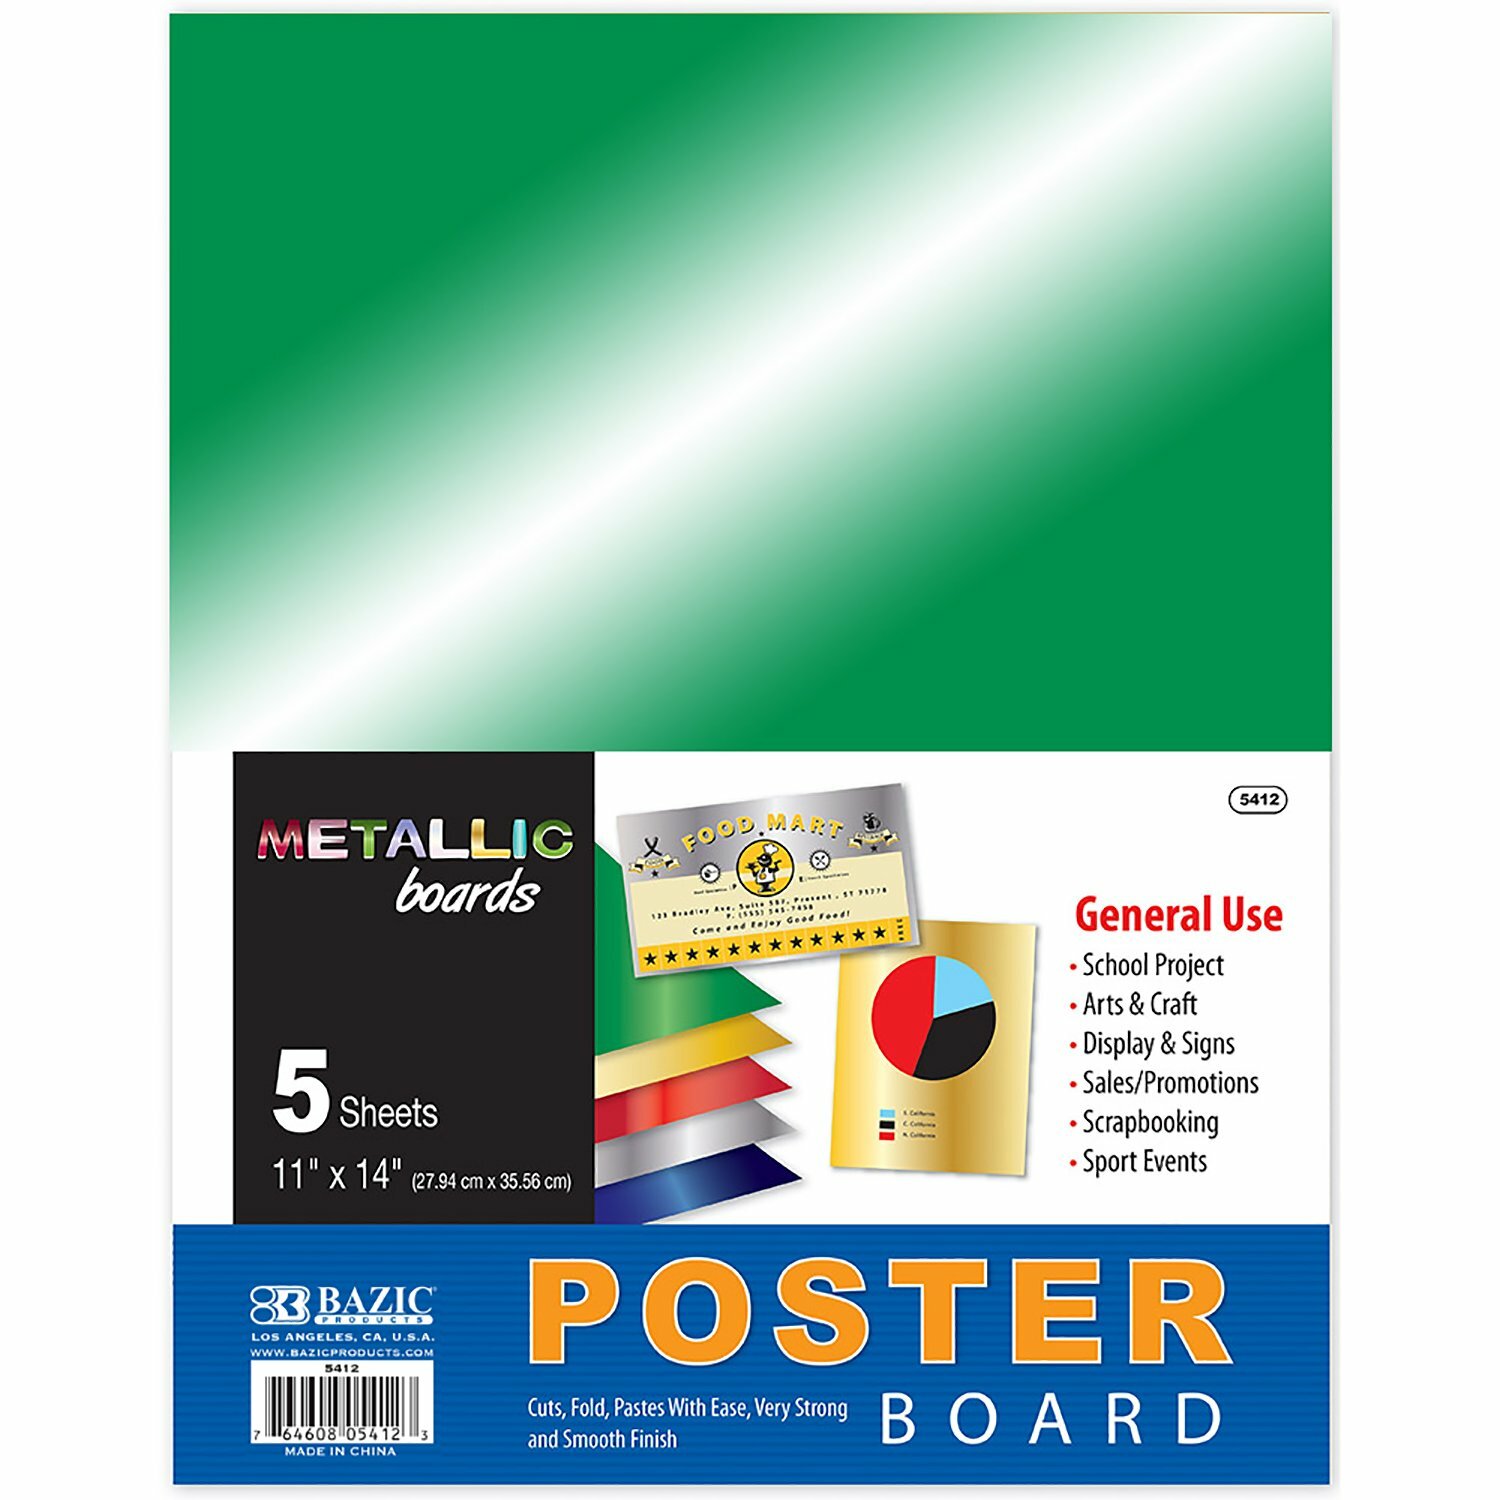 Poster Board/Metallic (5412)